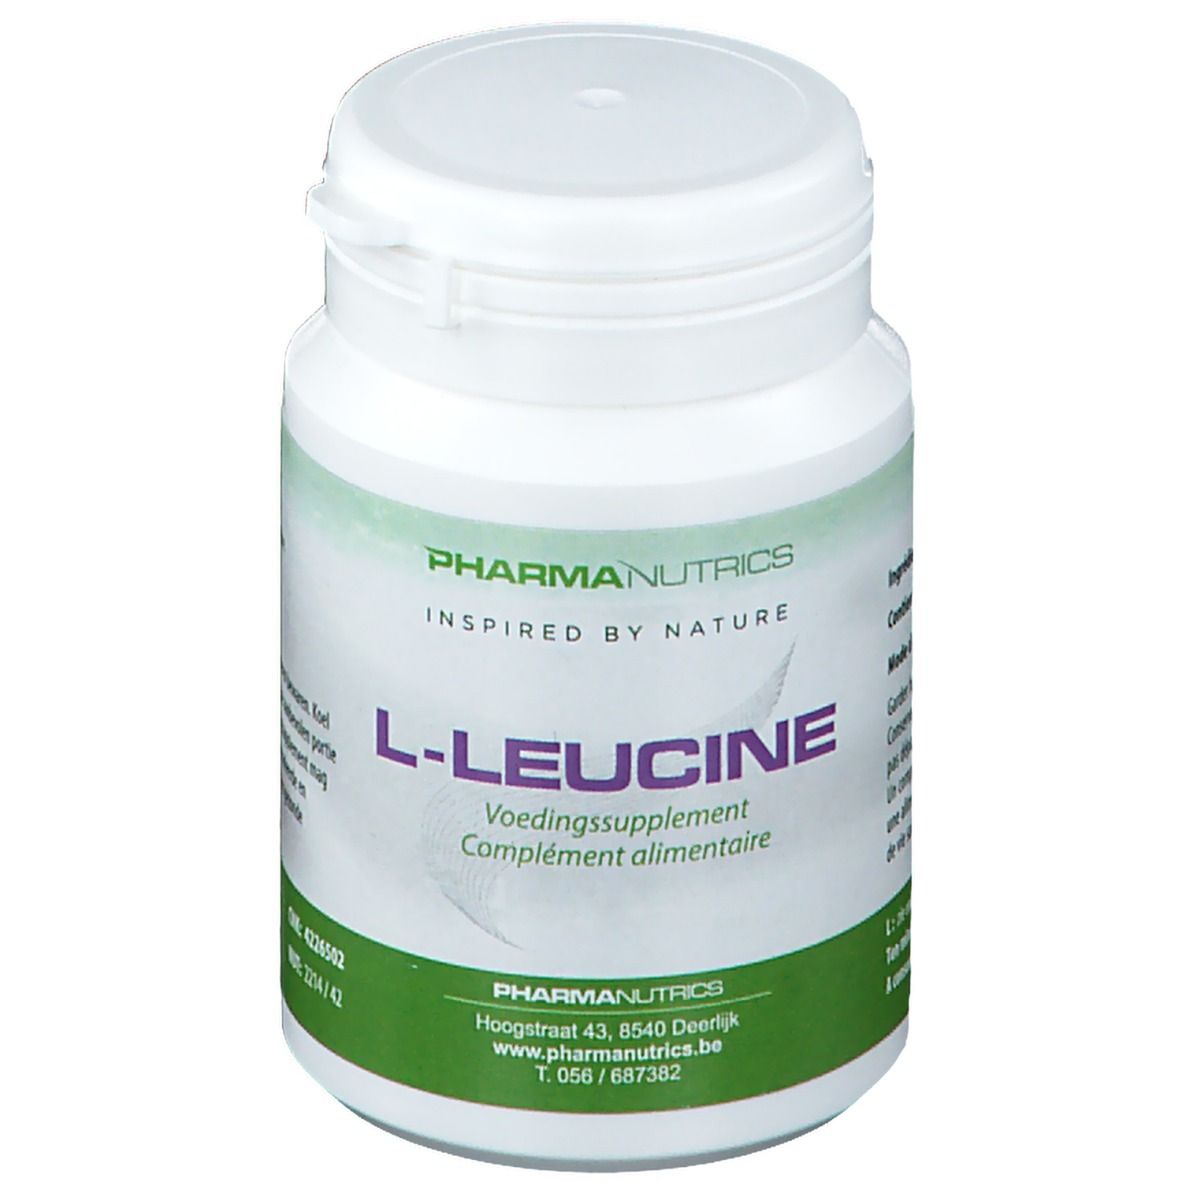 PharmaNutrics L-Leucine